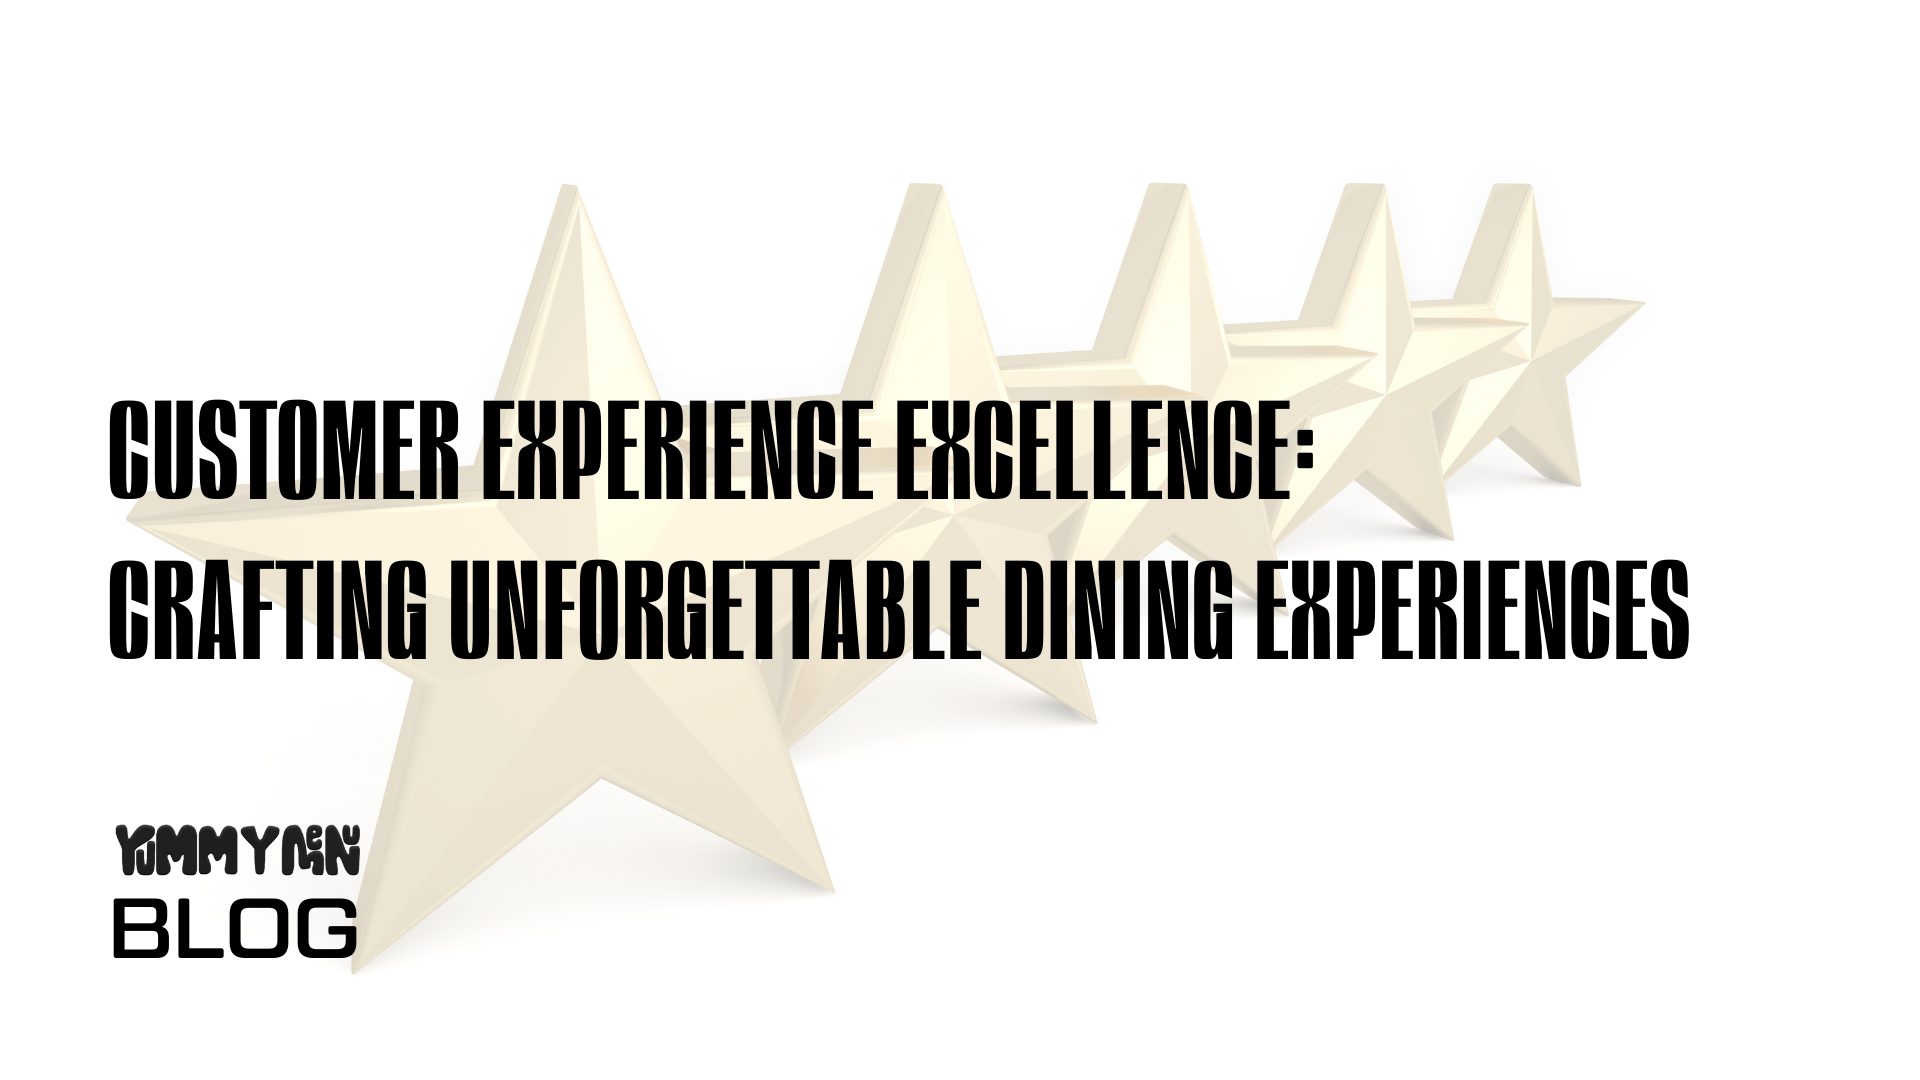 Customer Experience Excellence: Unvergessliche kulinarische Erlebnisse schaffen